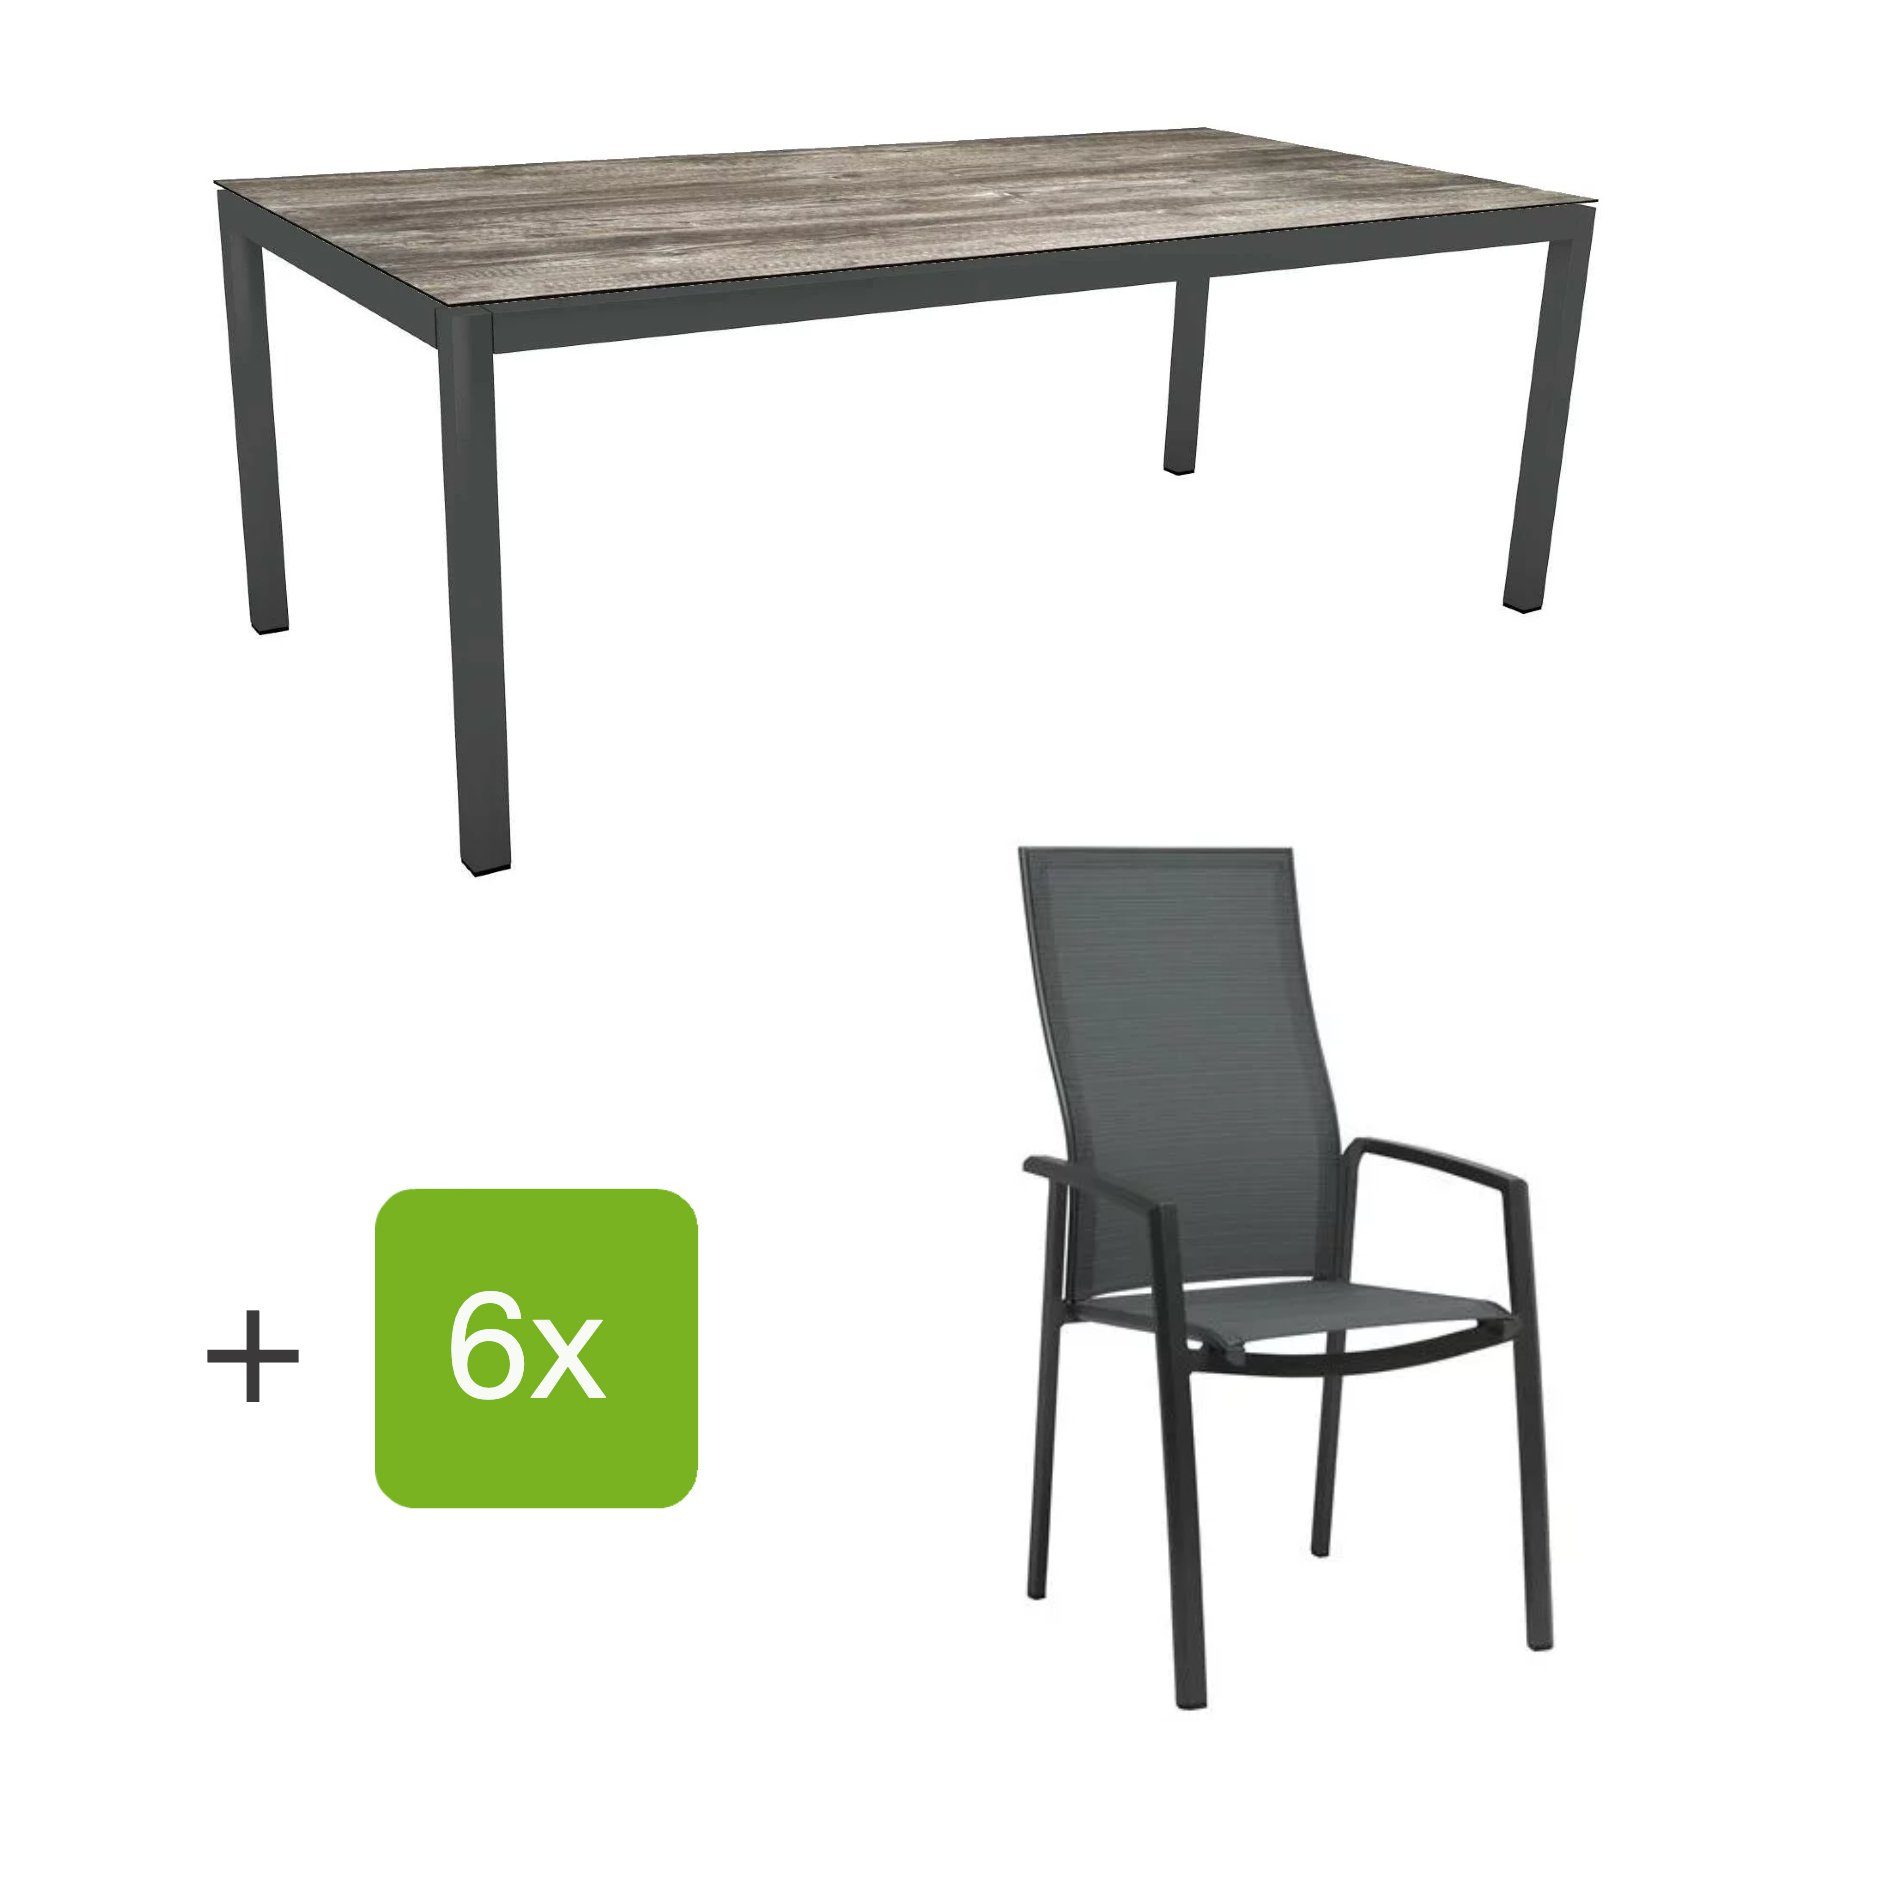 Stern Gartenmöbel-Set mit Hochlehner "Kari", Textilen karbon und Gartentisch 200x100 cm, Gestelle Alu anthrazit, Tischplatte HPL tundra grau